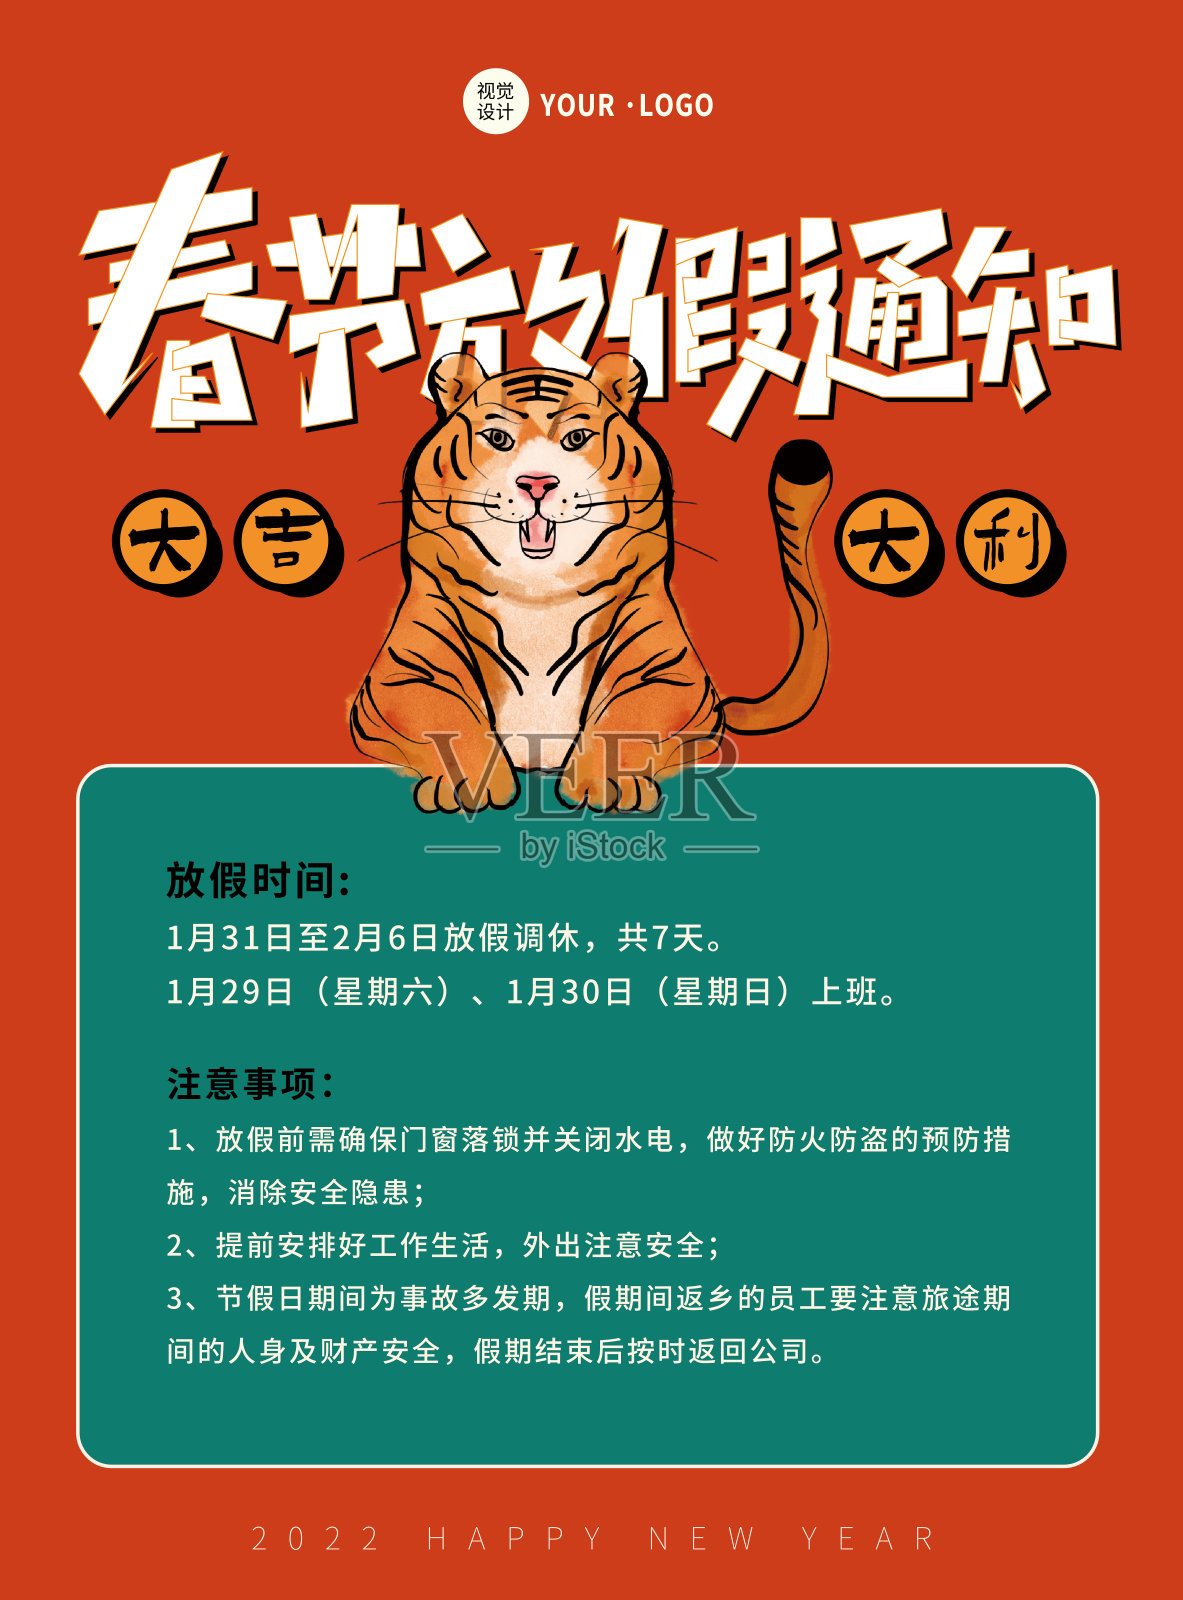 红色趣味插画创意春节放假通知宣传平面海报设计模板素材